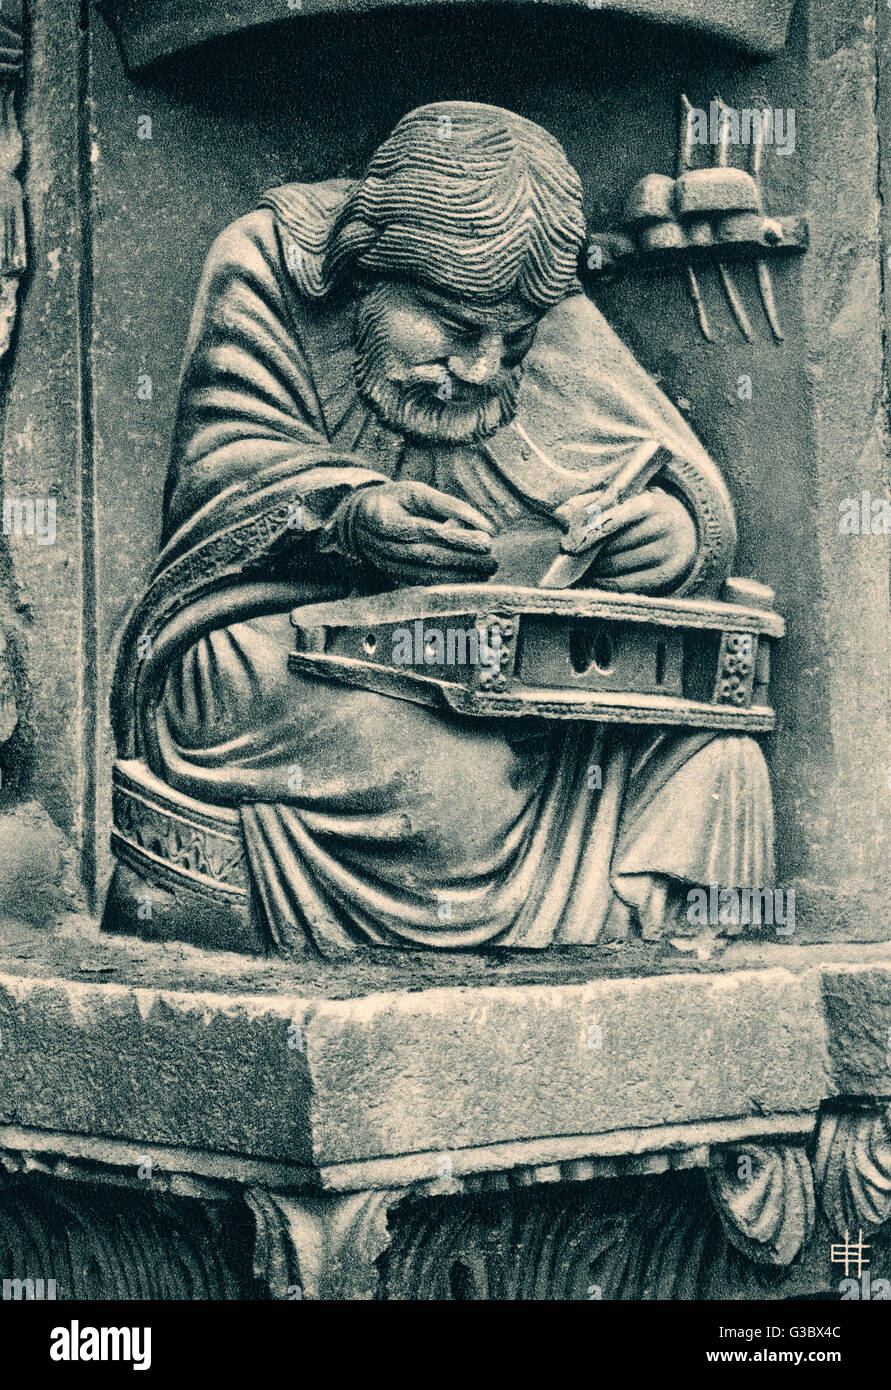 Skulptur des Pythagoras, griechischer Philosoph und Mathematiker, innerhalb der Tympanon an der richtigen Bucht der königliche Portal, Kathedrale von Chartres, Frankreich.      Datum: 12.-13. Jahrhundert Stockfoto